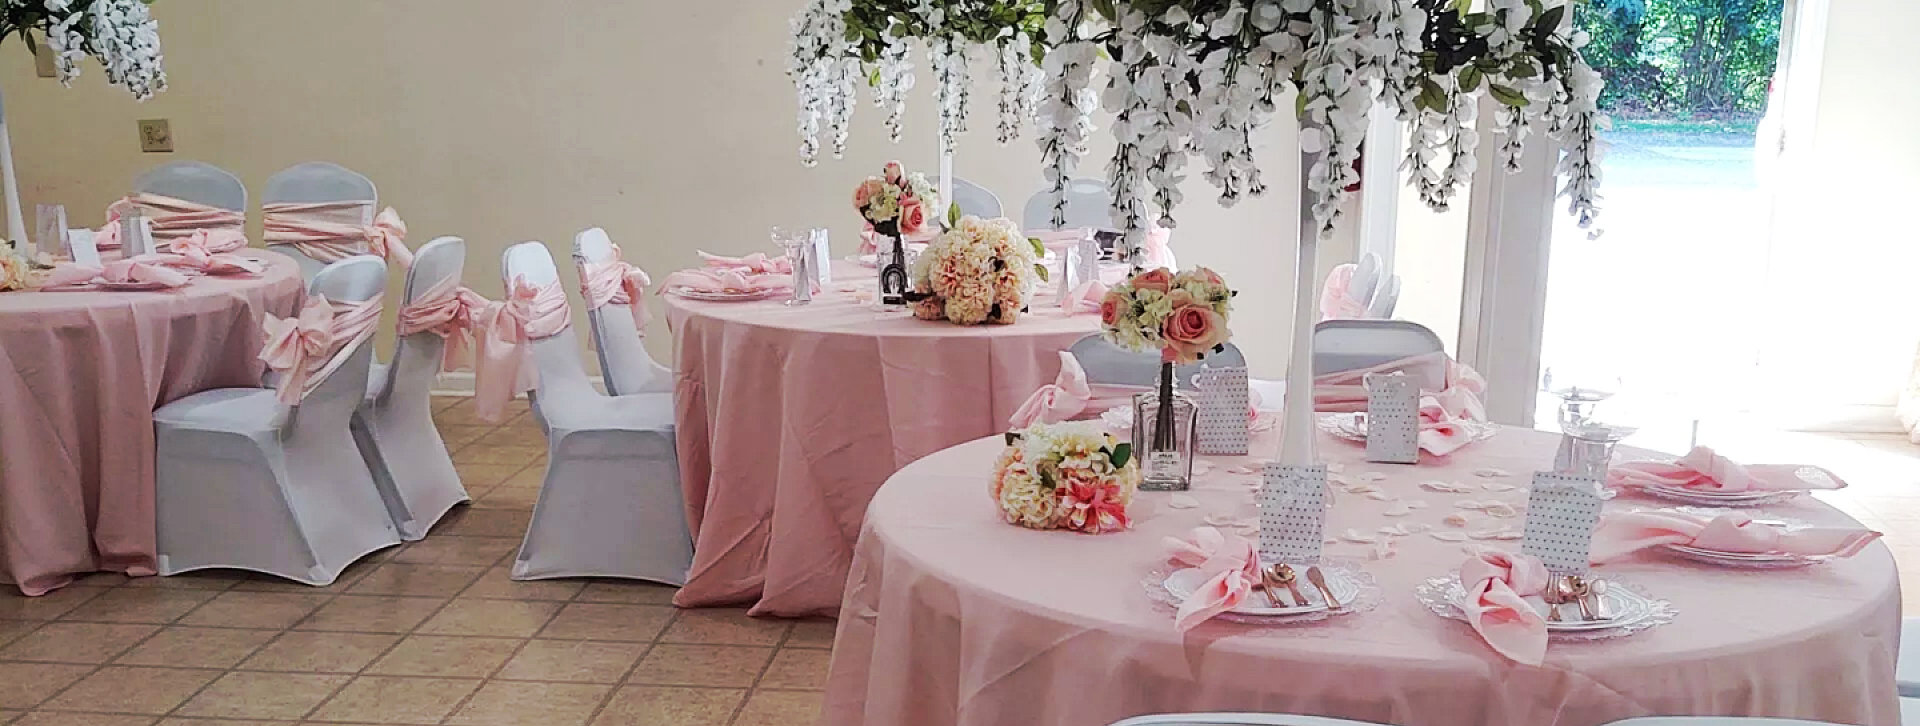 pink table and chair setup